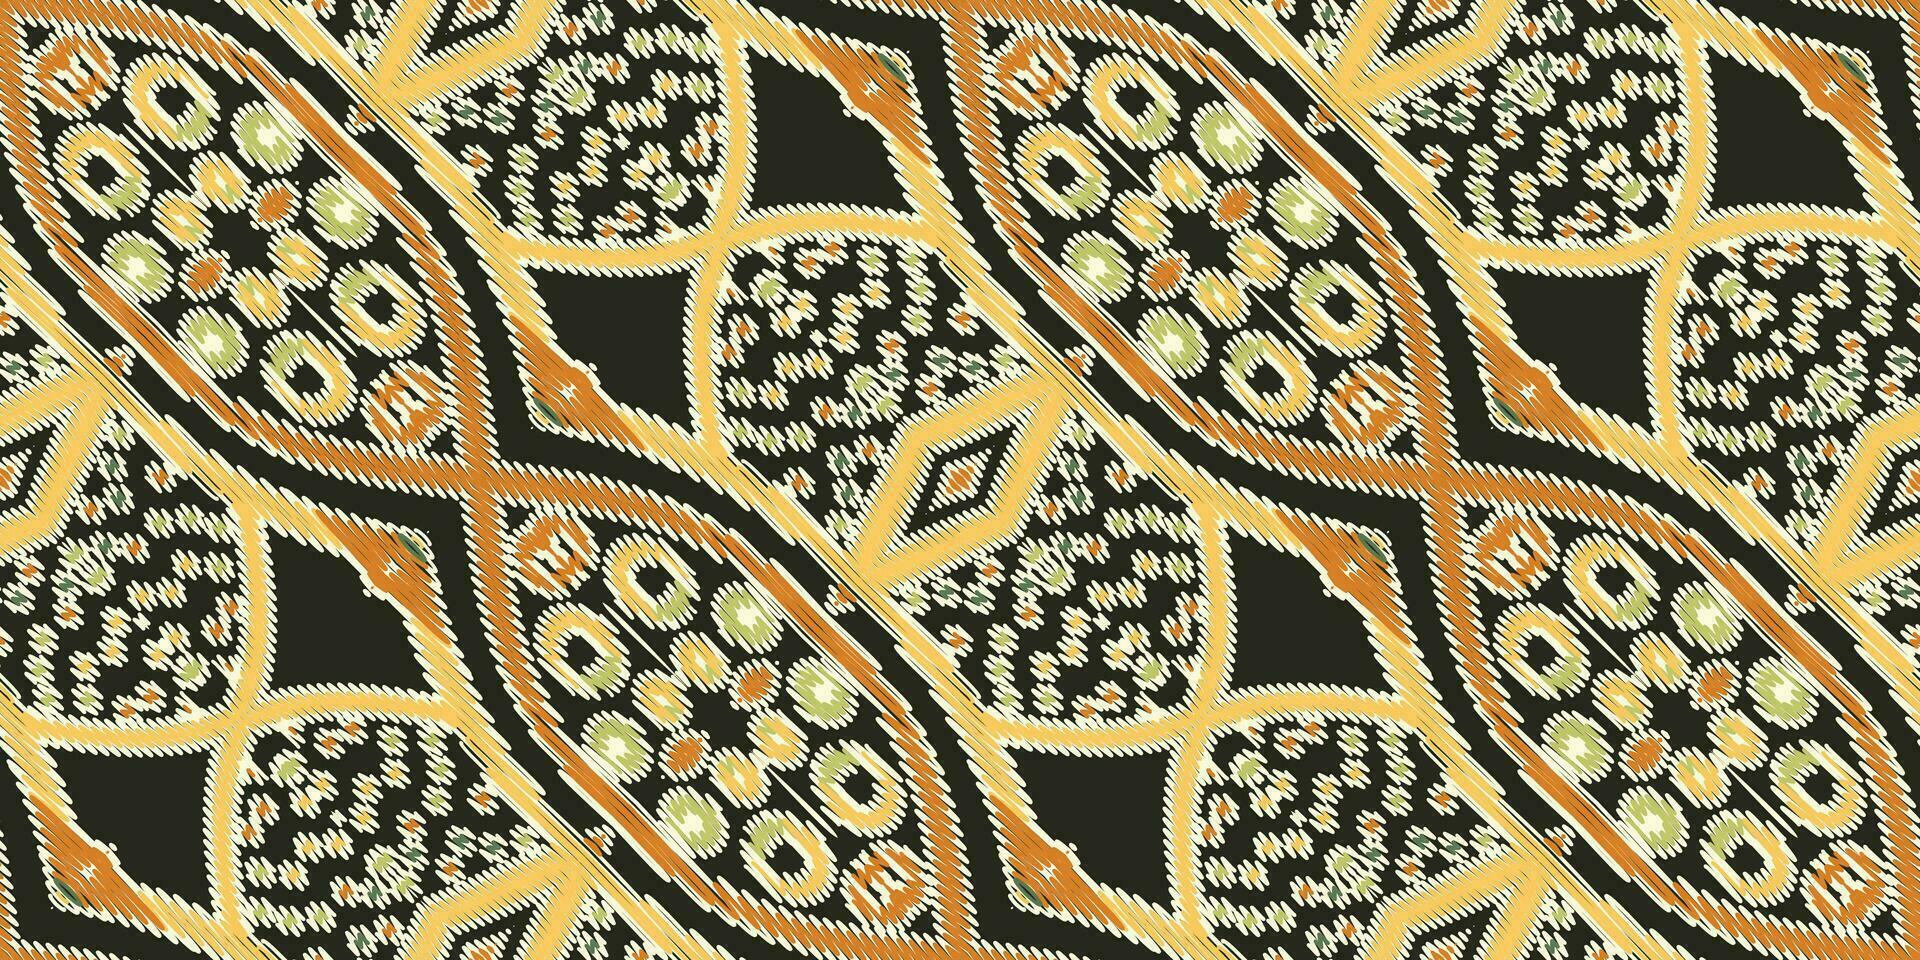 motief folklore patroon naadloos Australisch aboriginal patroon motief borduurwerk, ikat borduurwerk vector ontwerp voor afdrukken kant patroon naadloos patroon wijnoogst shibori jacquard naadloos